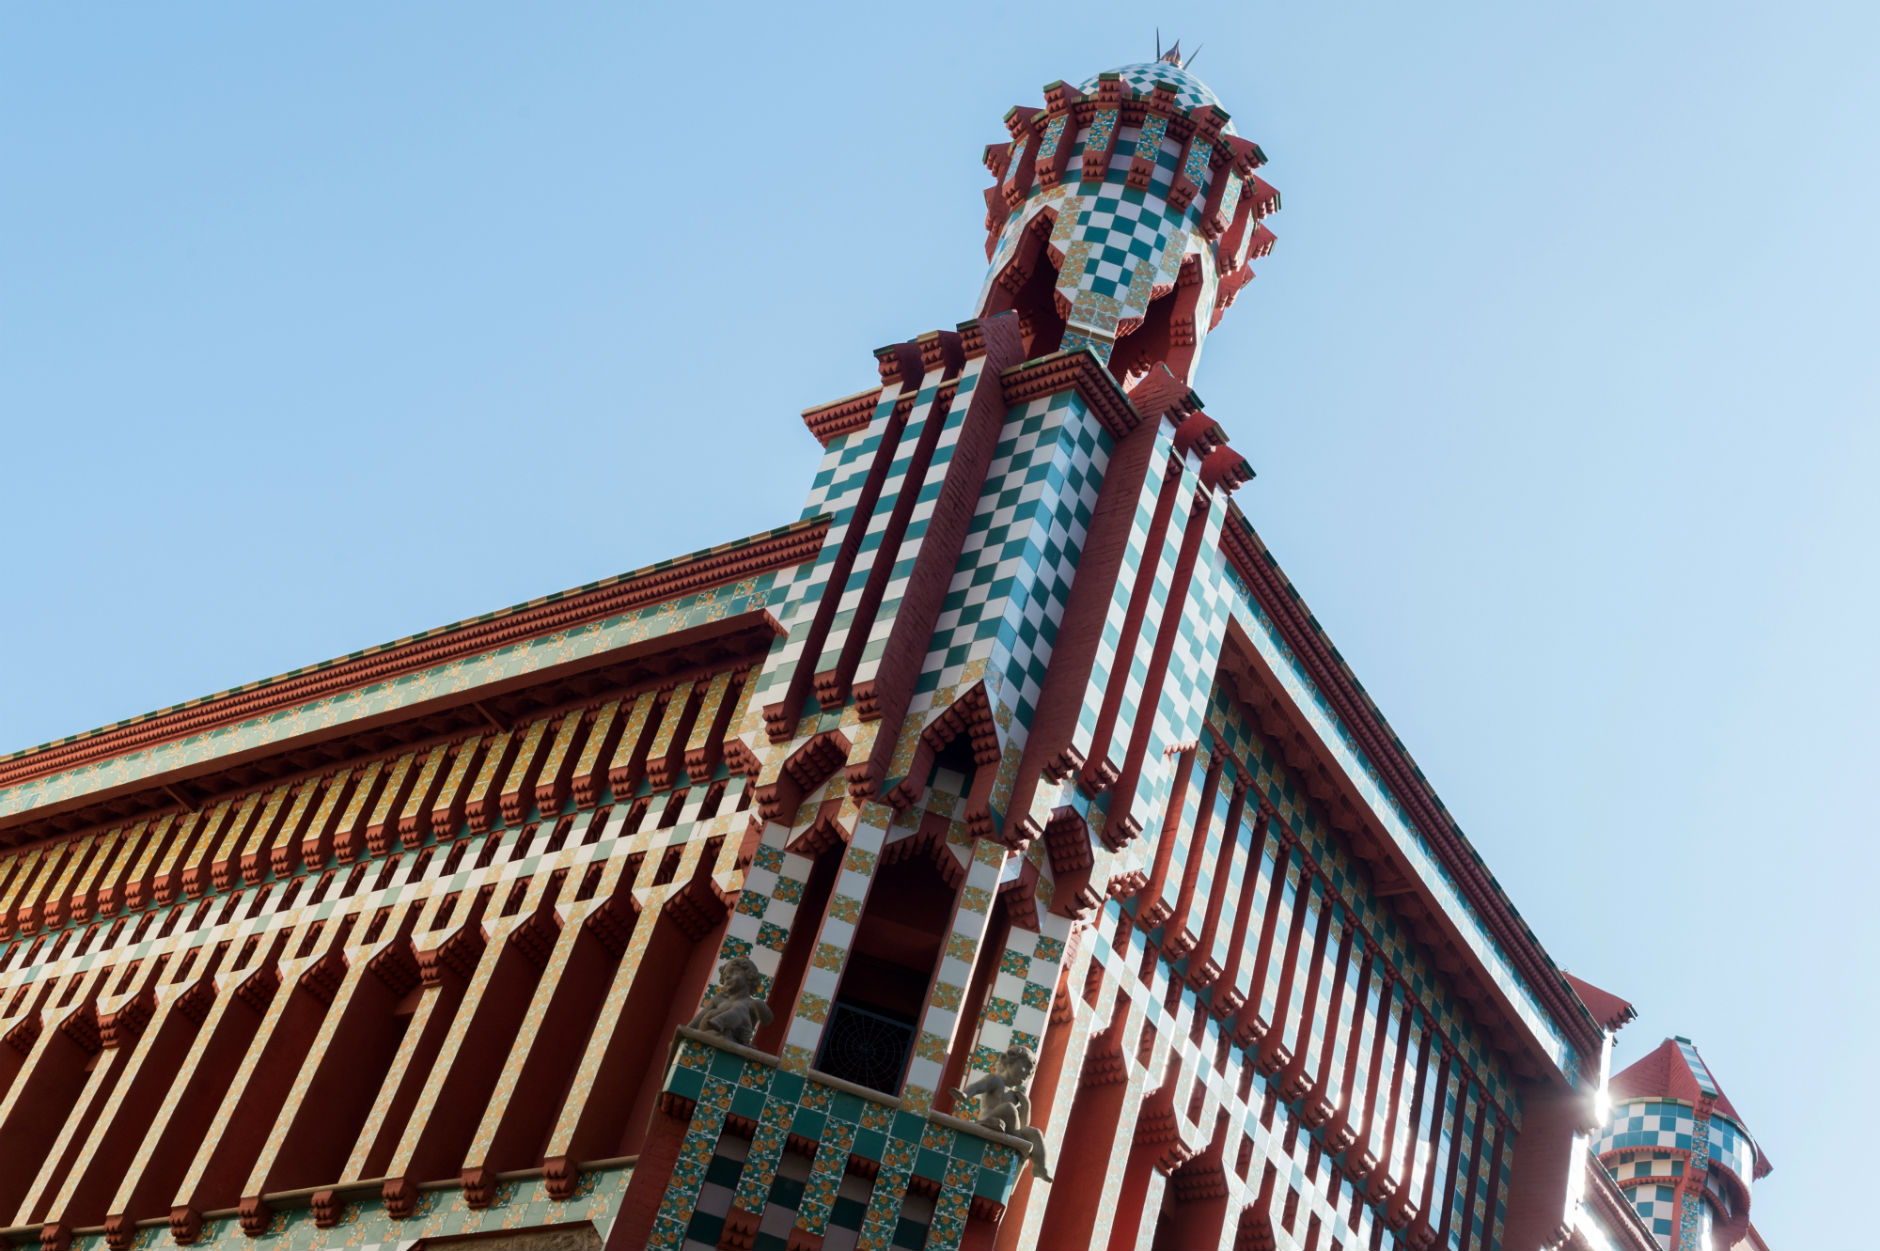 Façana d'estil oriental a la Casa Vicens